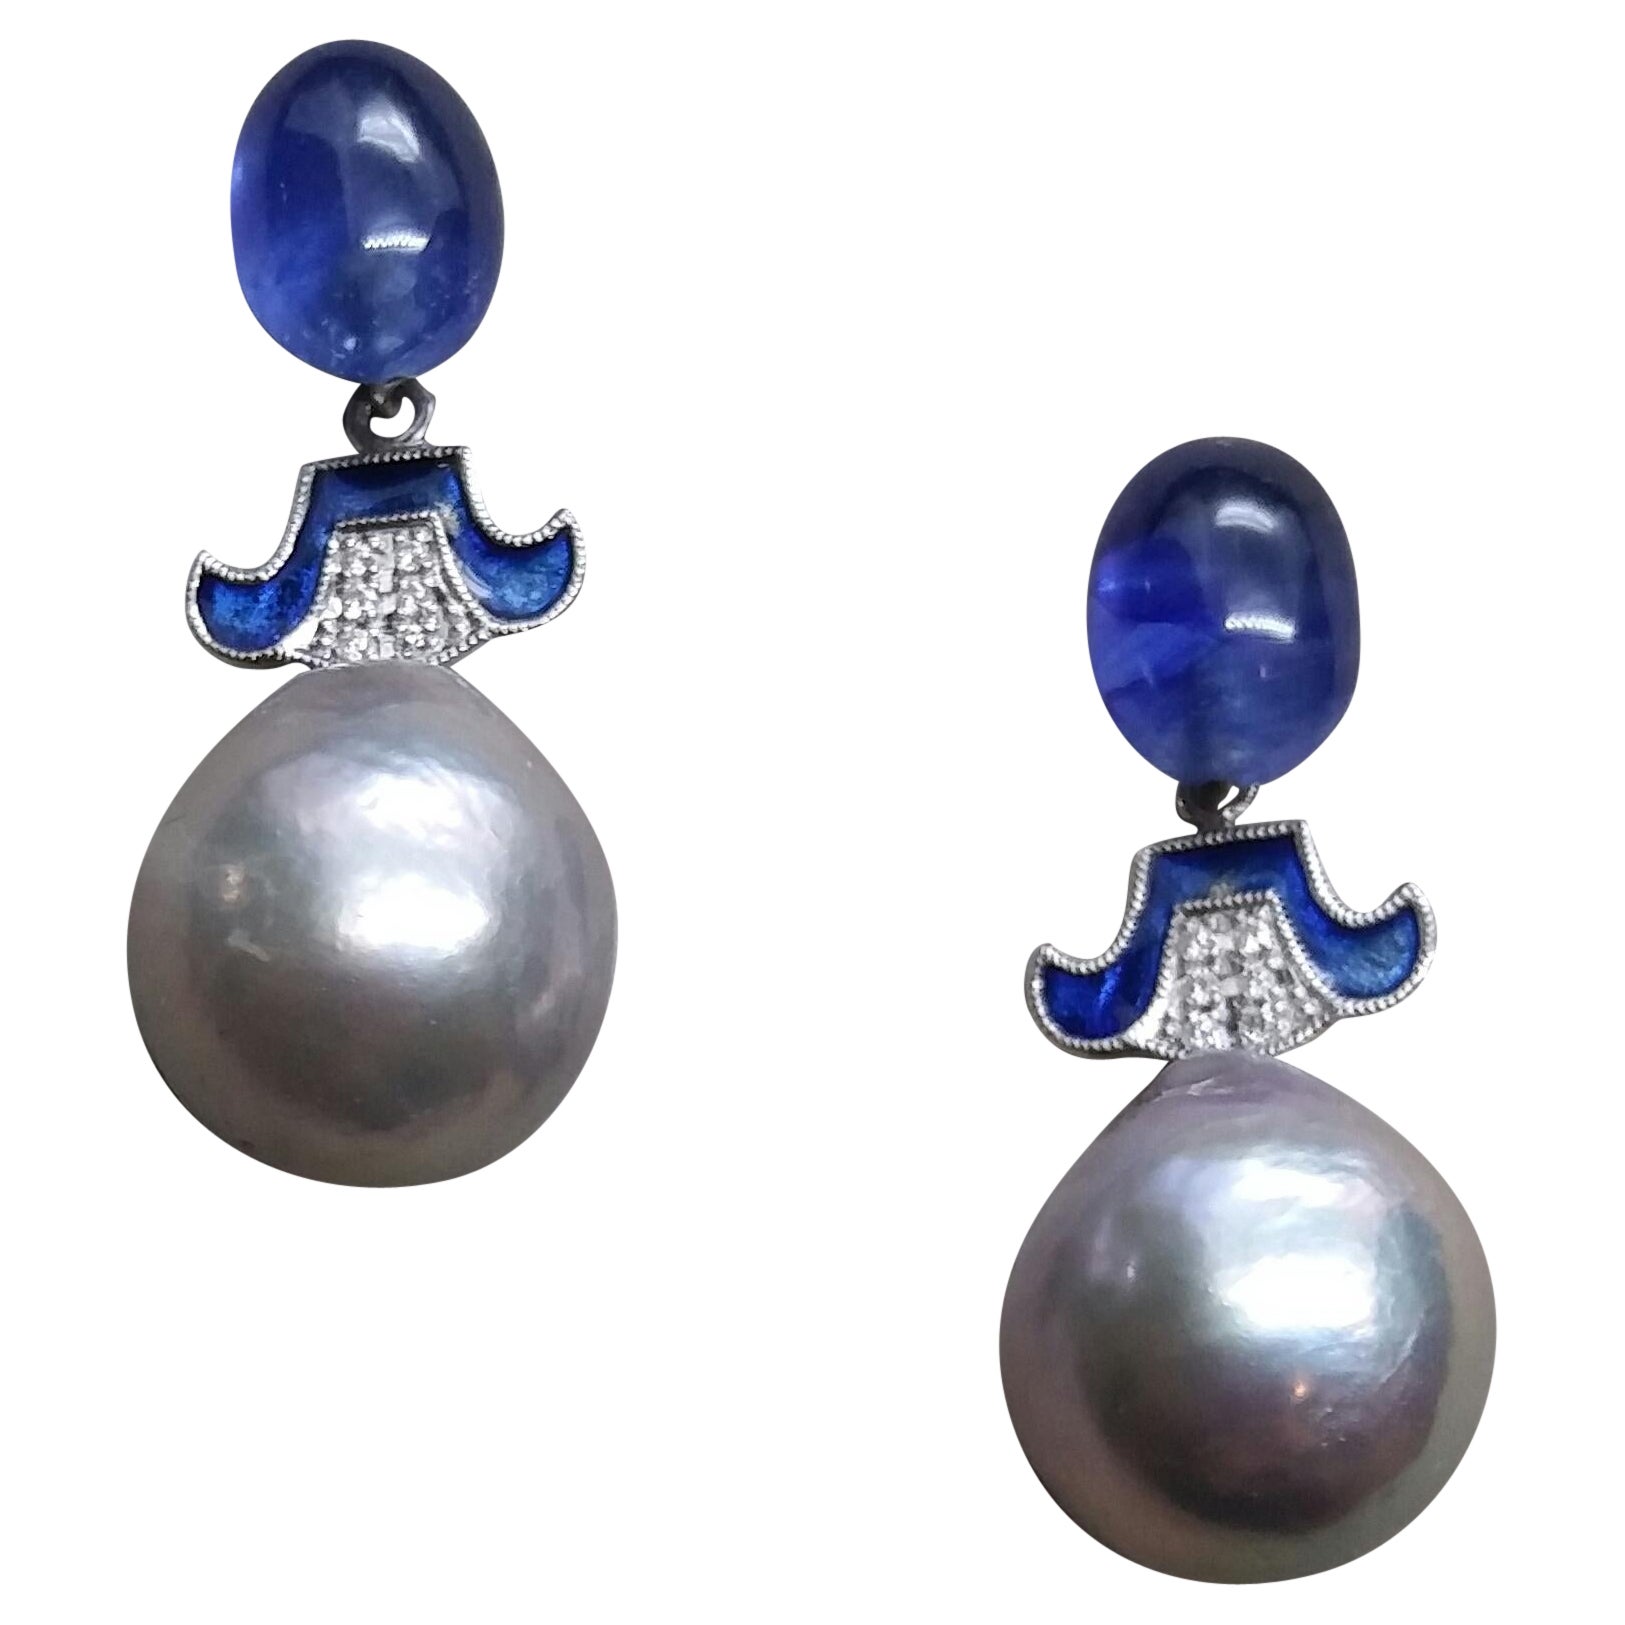 Pour Chris, boucles d'oreilles baroques grises en perles, or, diamants, saphirs bleus et émail